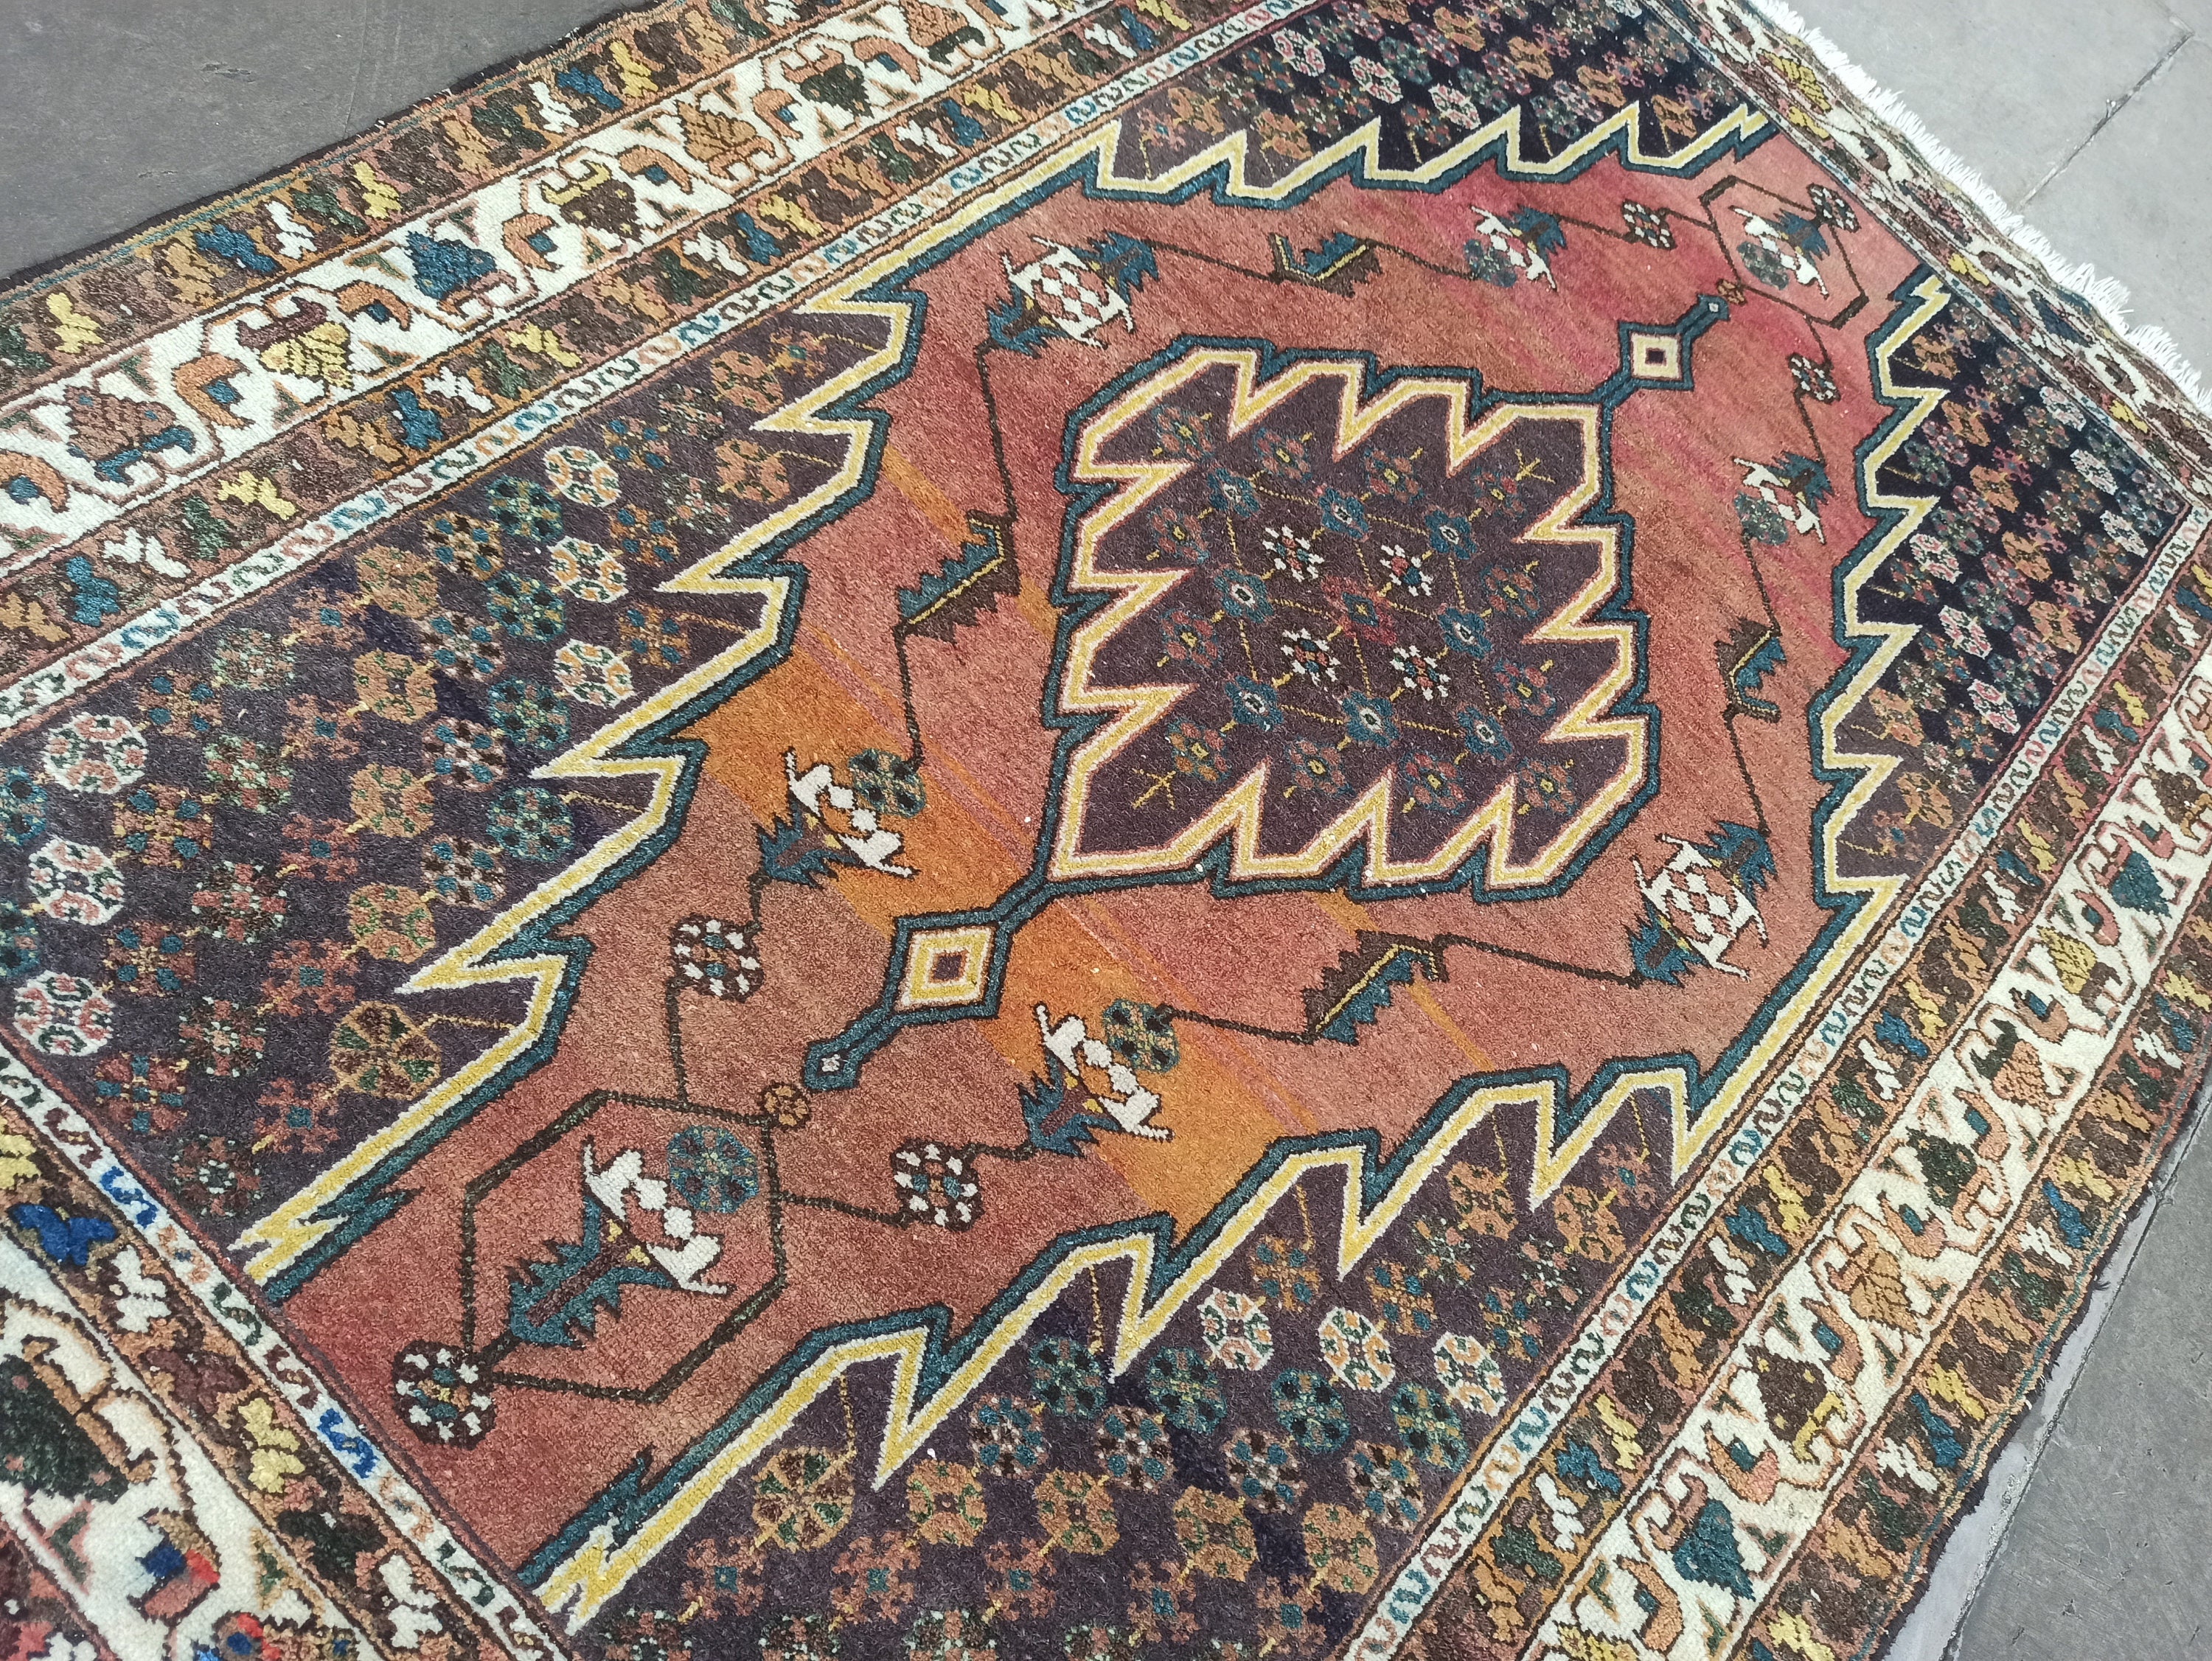 Handmade Turkish Rug for Sale Online Antique Carpet 5x7 Ft - Etsy 